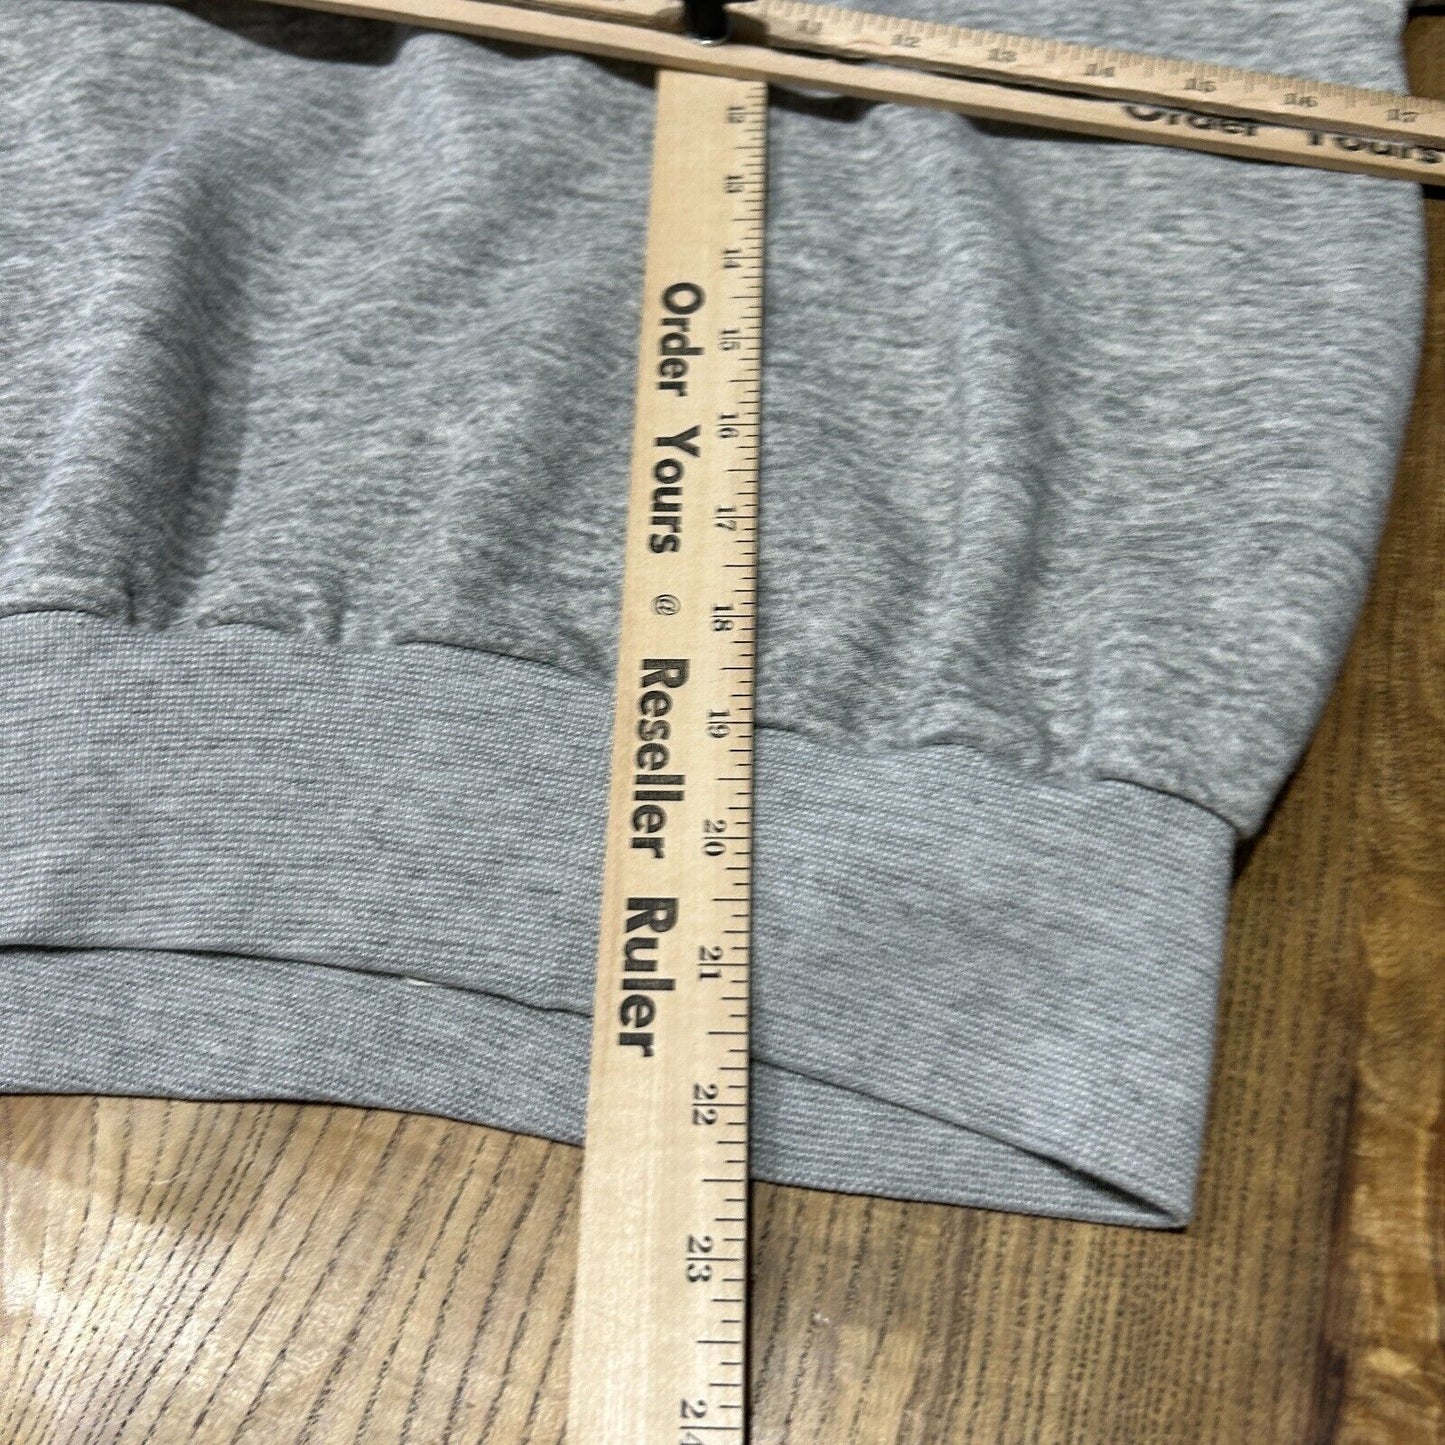 VINTAGE 80s | SYRACUSE Grey University Hoodie Sweater sz S/M Adult